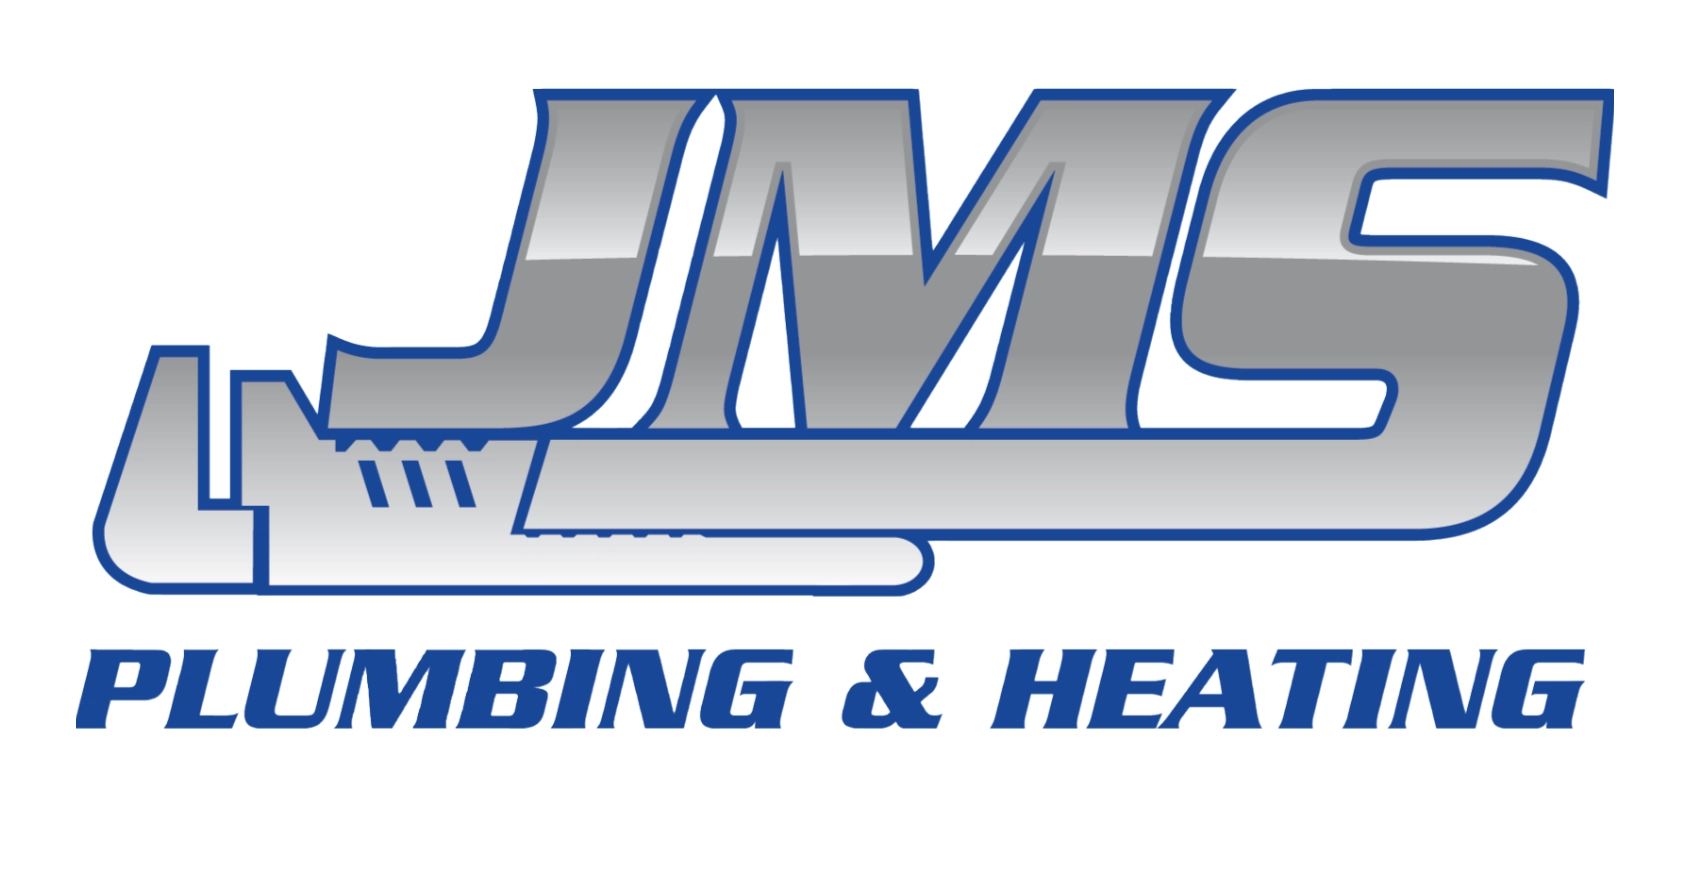 JMS Plumbing Logo